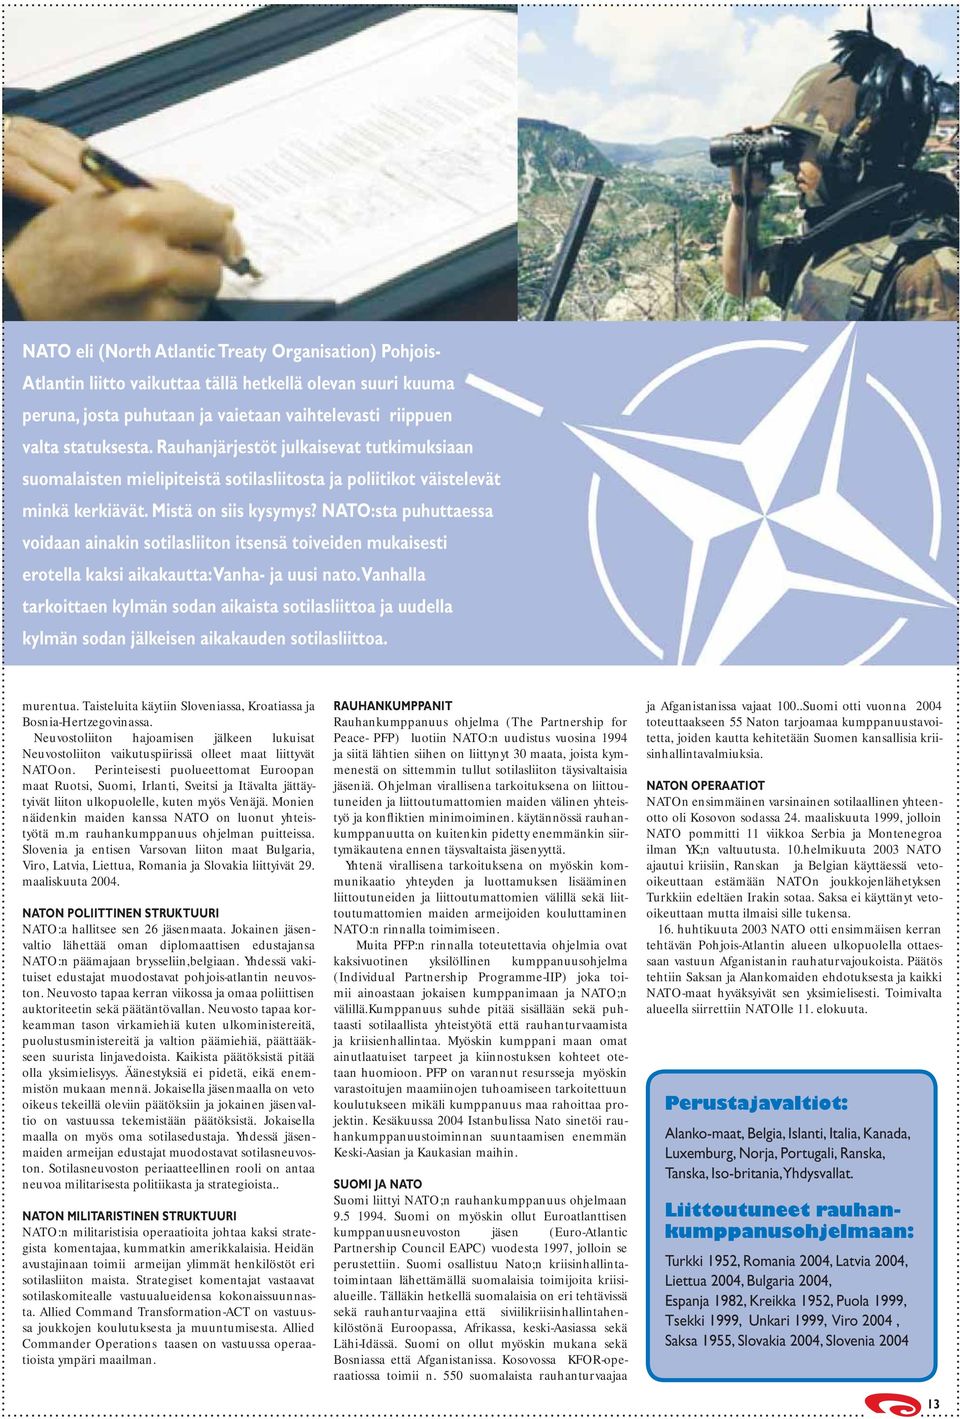 NATO:sta puhuttaessa voidaan ainakin sotilasliiton itsensä toiveiden mukaisesti erotella kaksi aikakautta: Vanha- ja uusi nato.